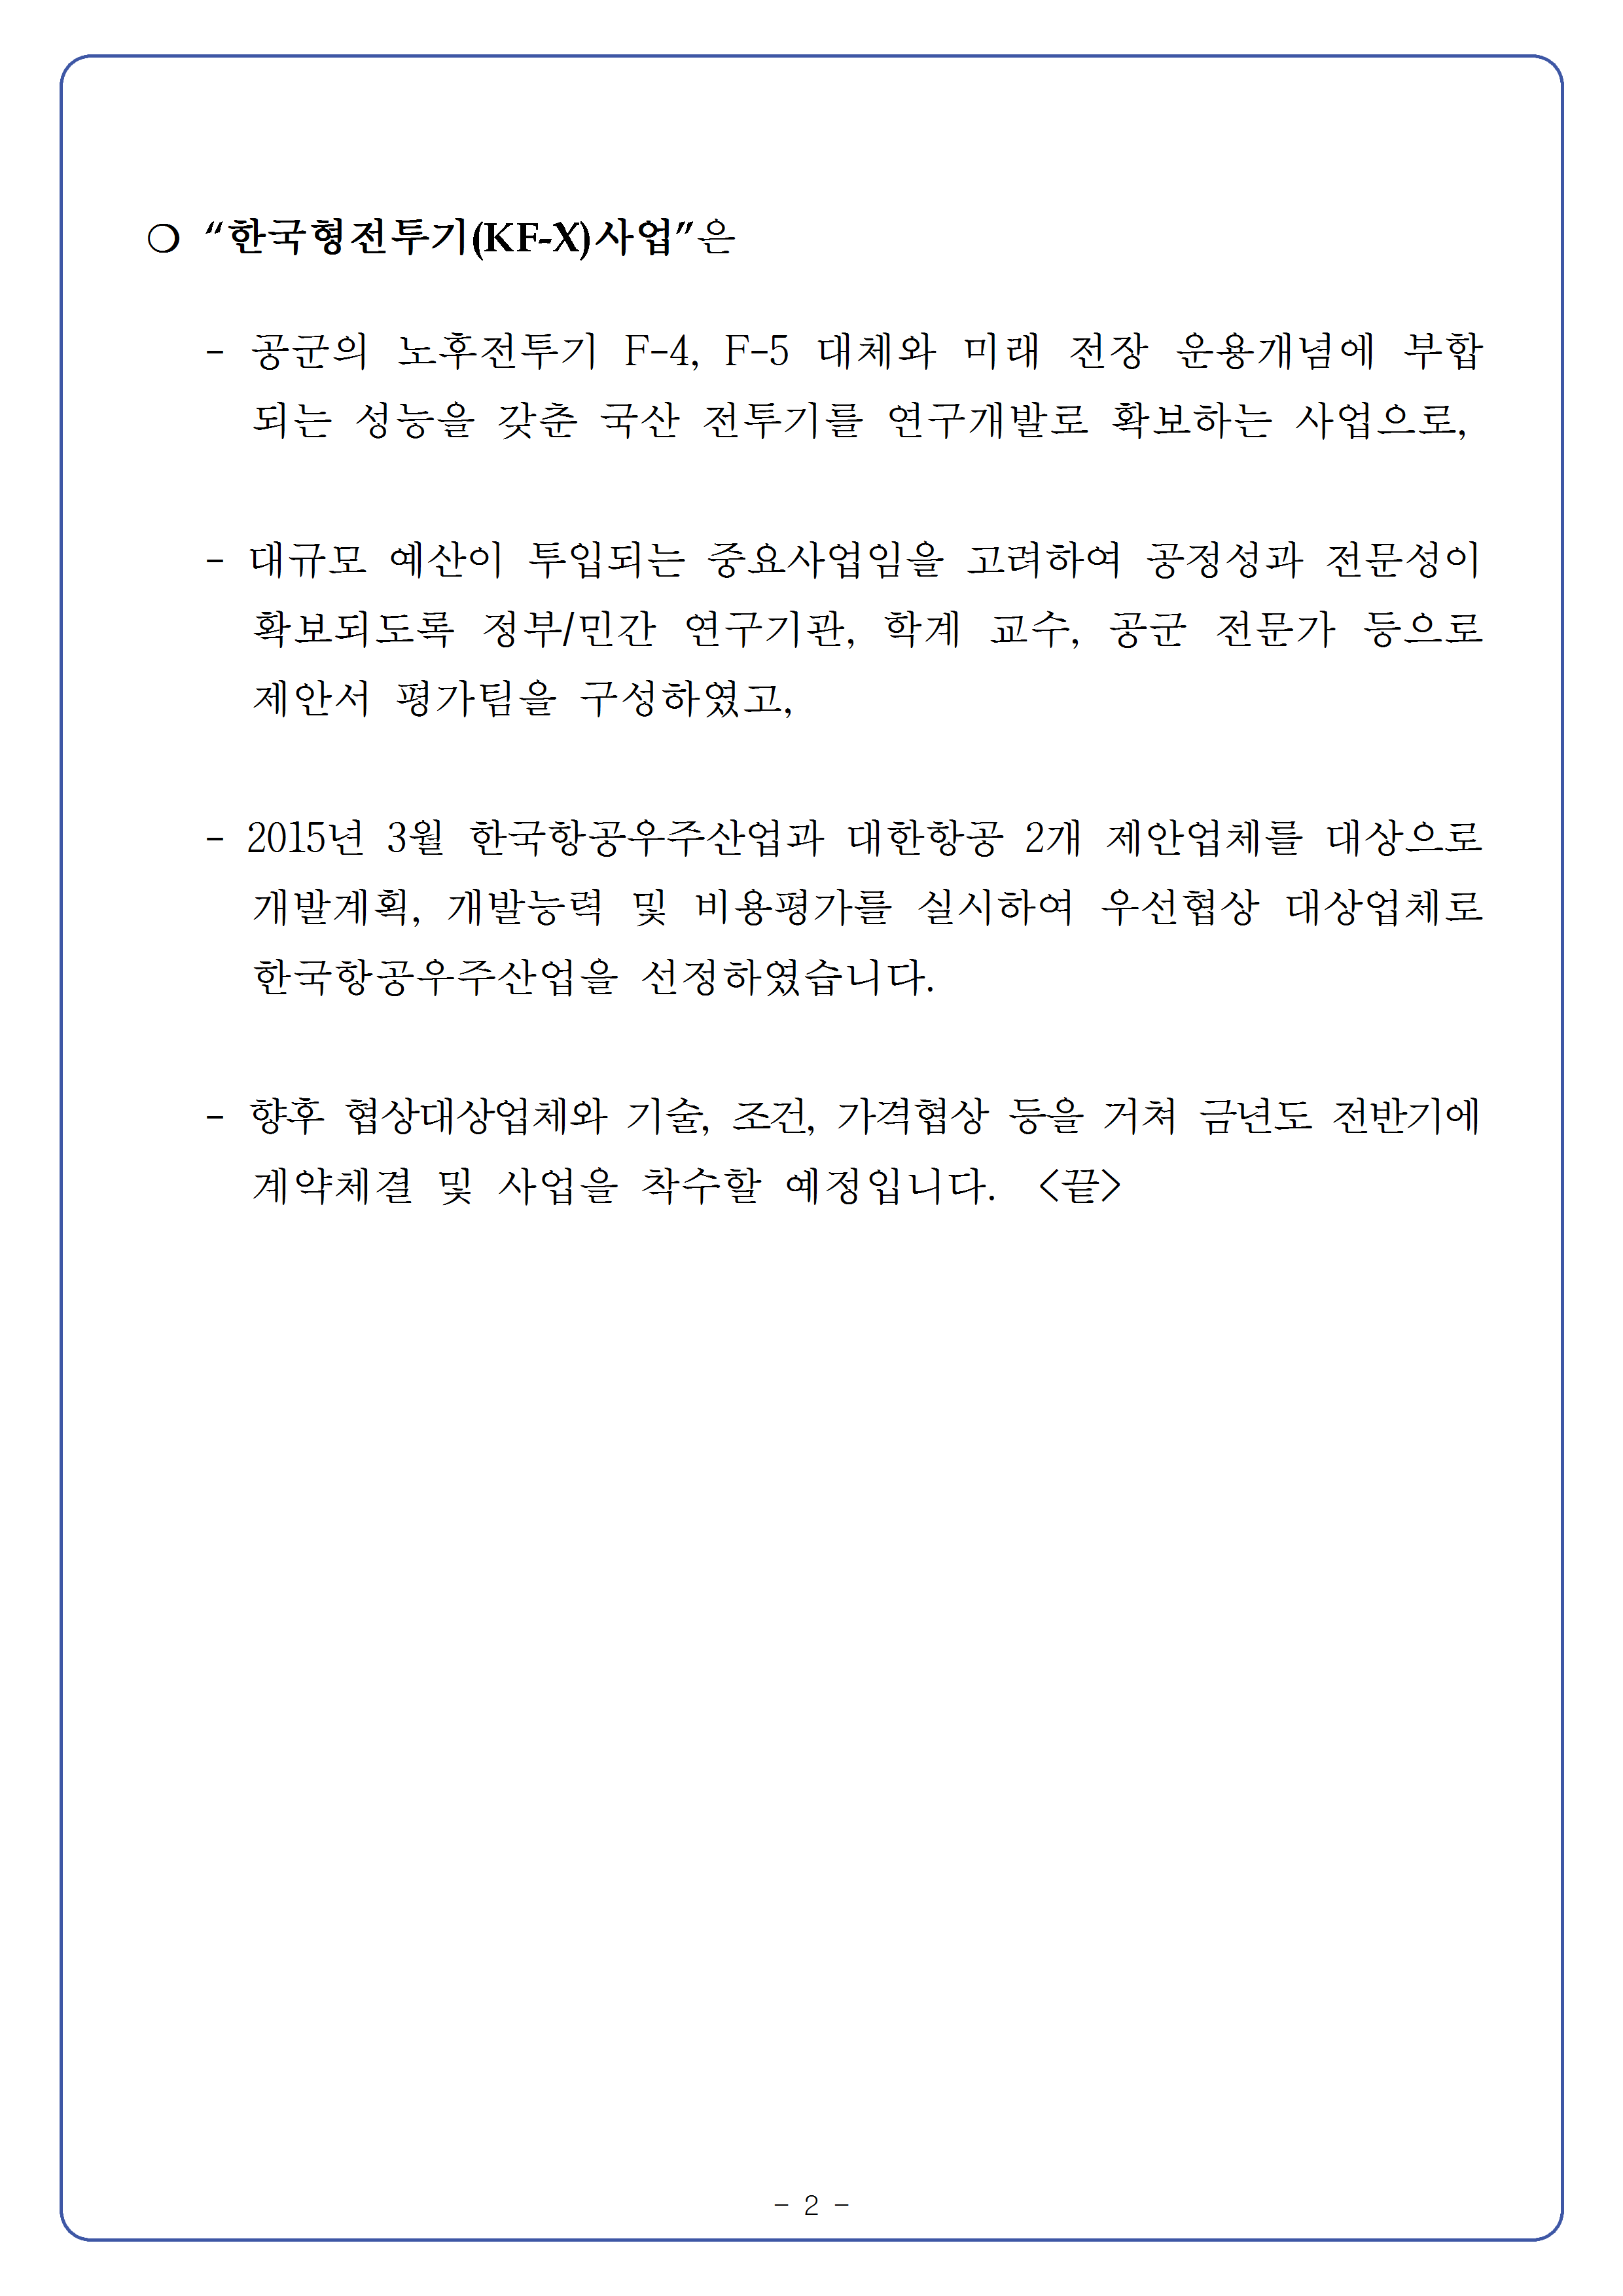 20150330-제87회 방위사업추진위원회 개최 결과002.png